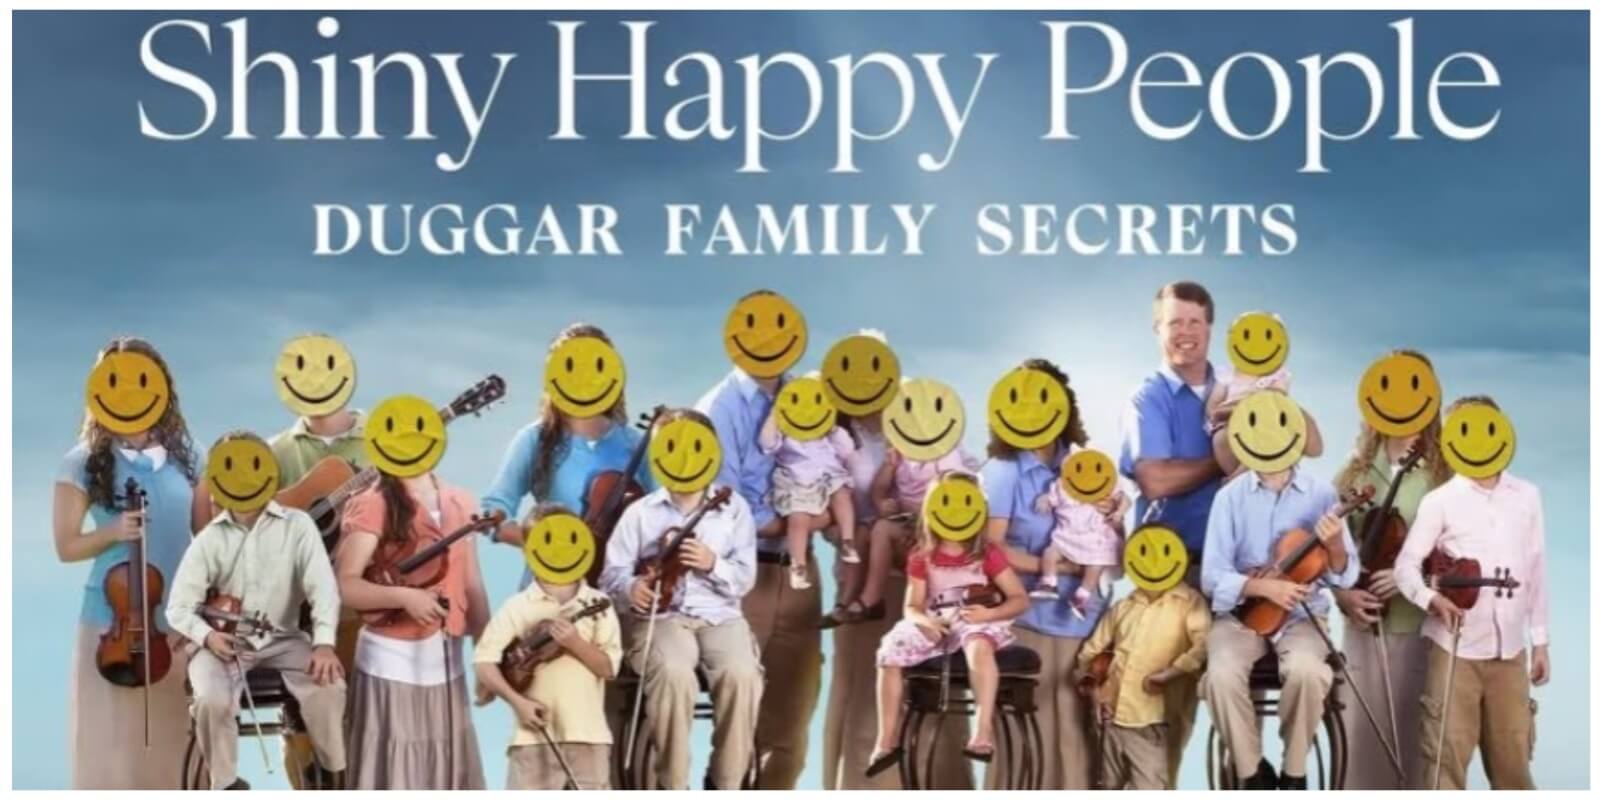 Jim Holt hace la misma broma que Josh Duggar en 'Shiny Happy People: Duggar Family Secrets'